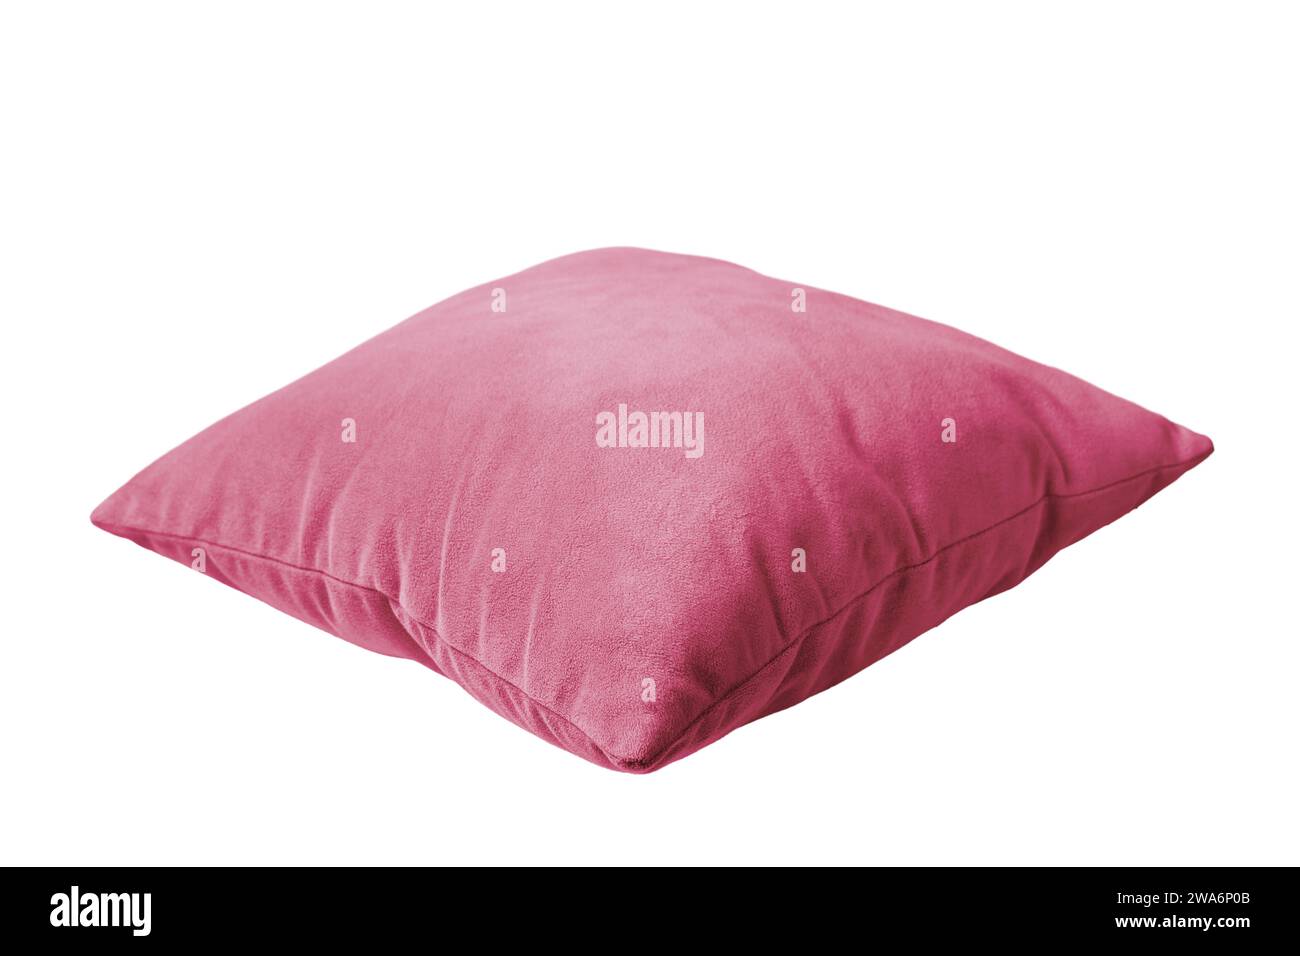 Cuscino rettangolare decorativo rosa per dormire e riposare isolato su sfondo bianco. Cuscino per interni domestici, mockup a cuscino, modello Foto Stock